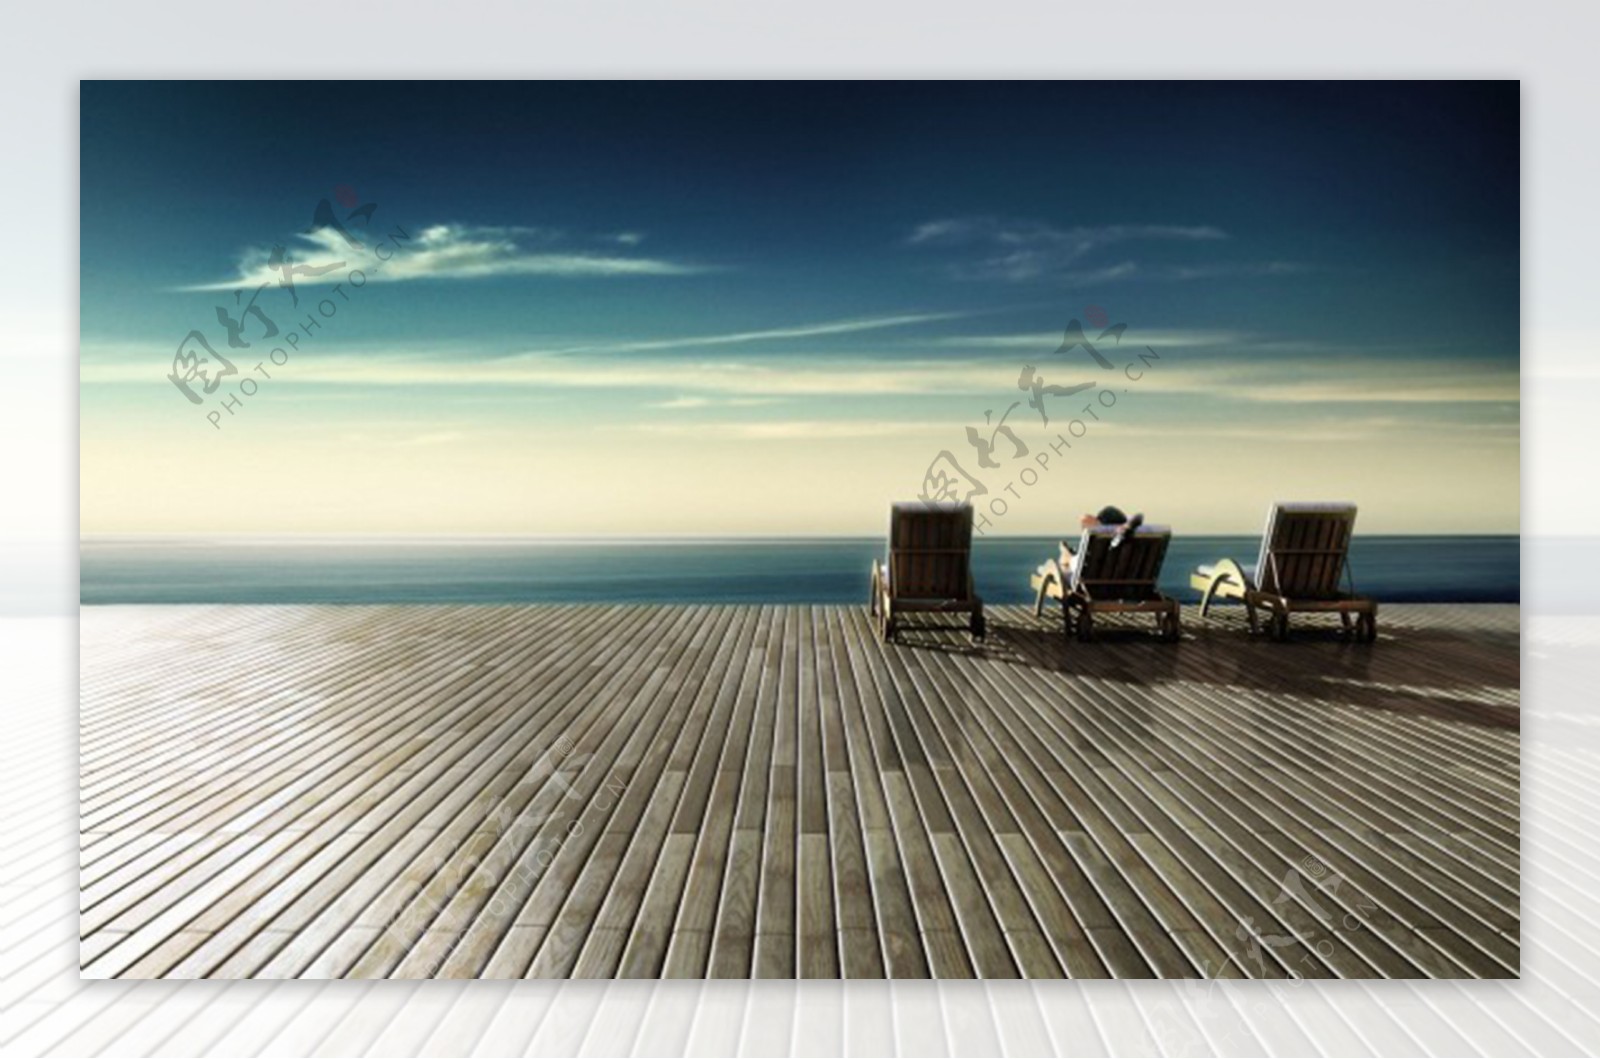 唯美海边躺椅风景图片